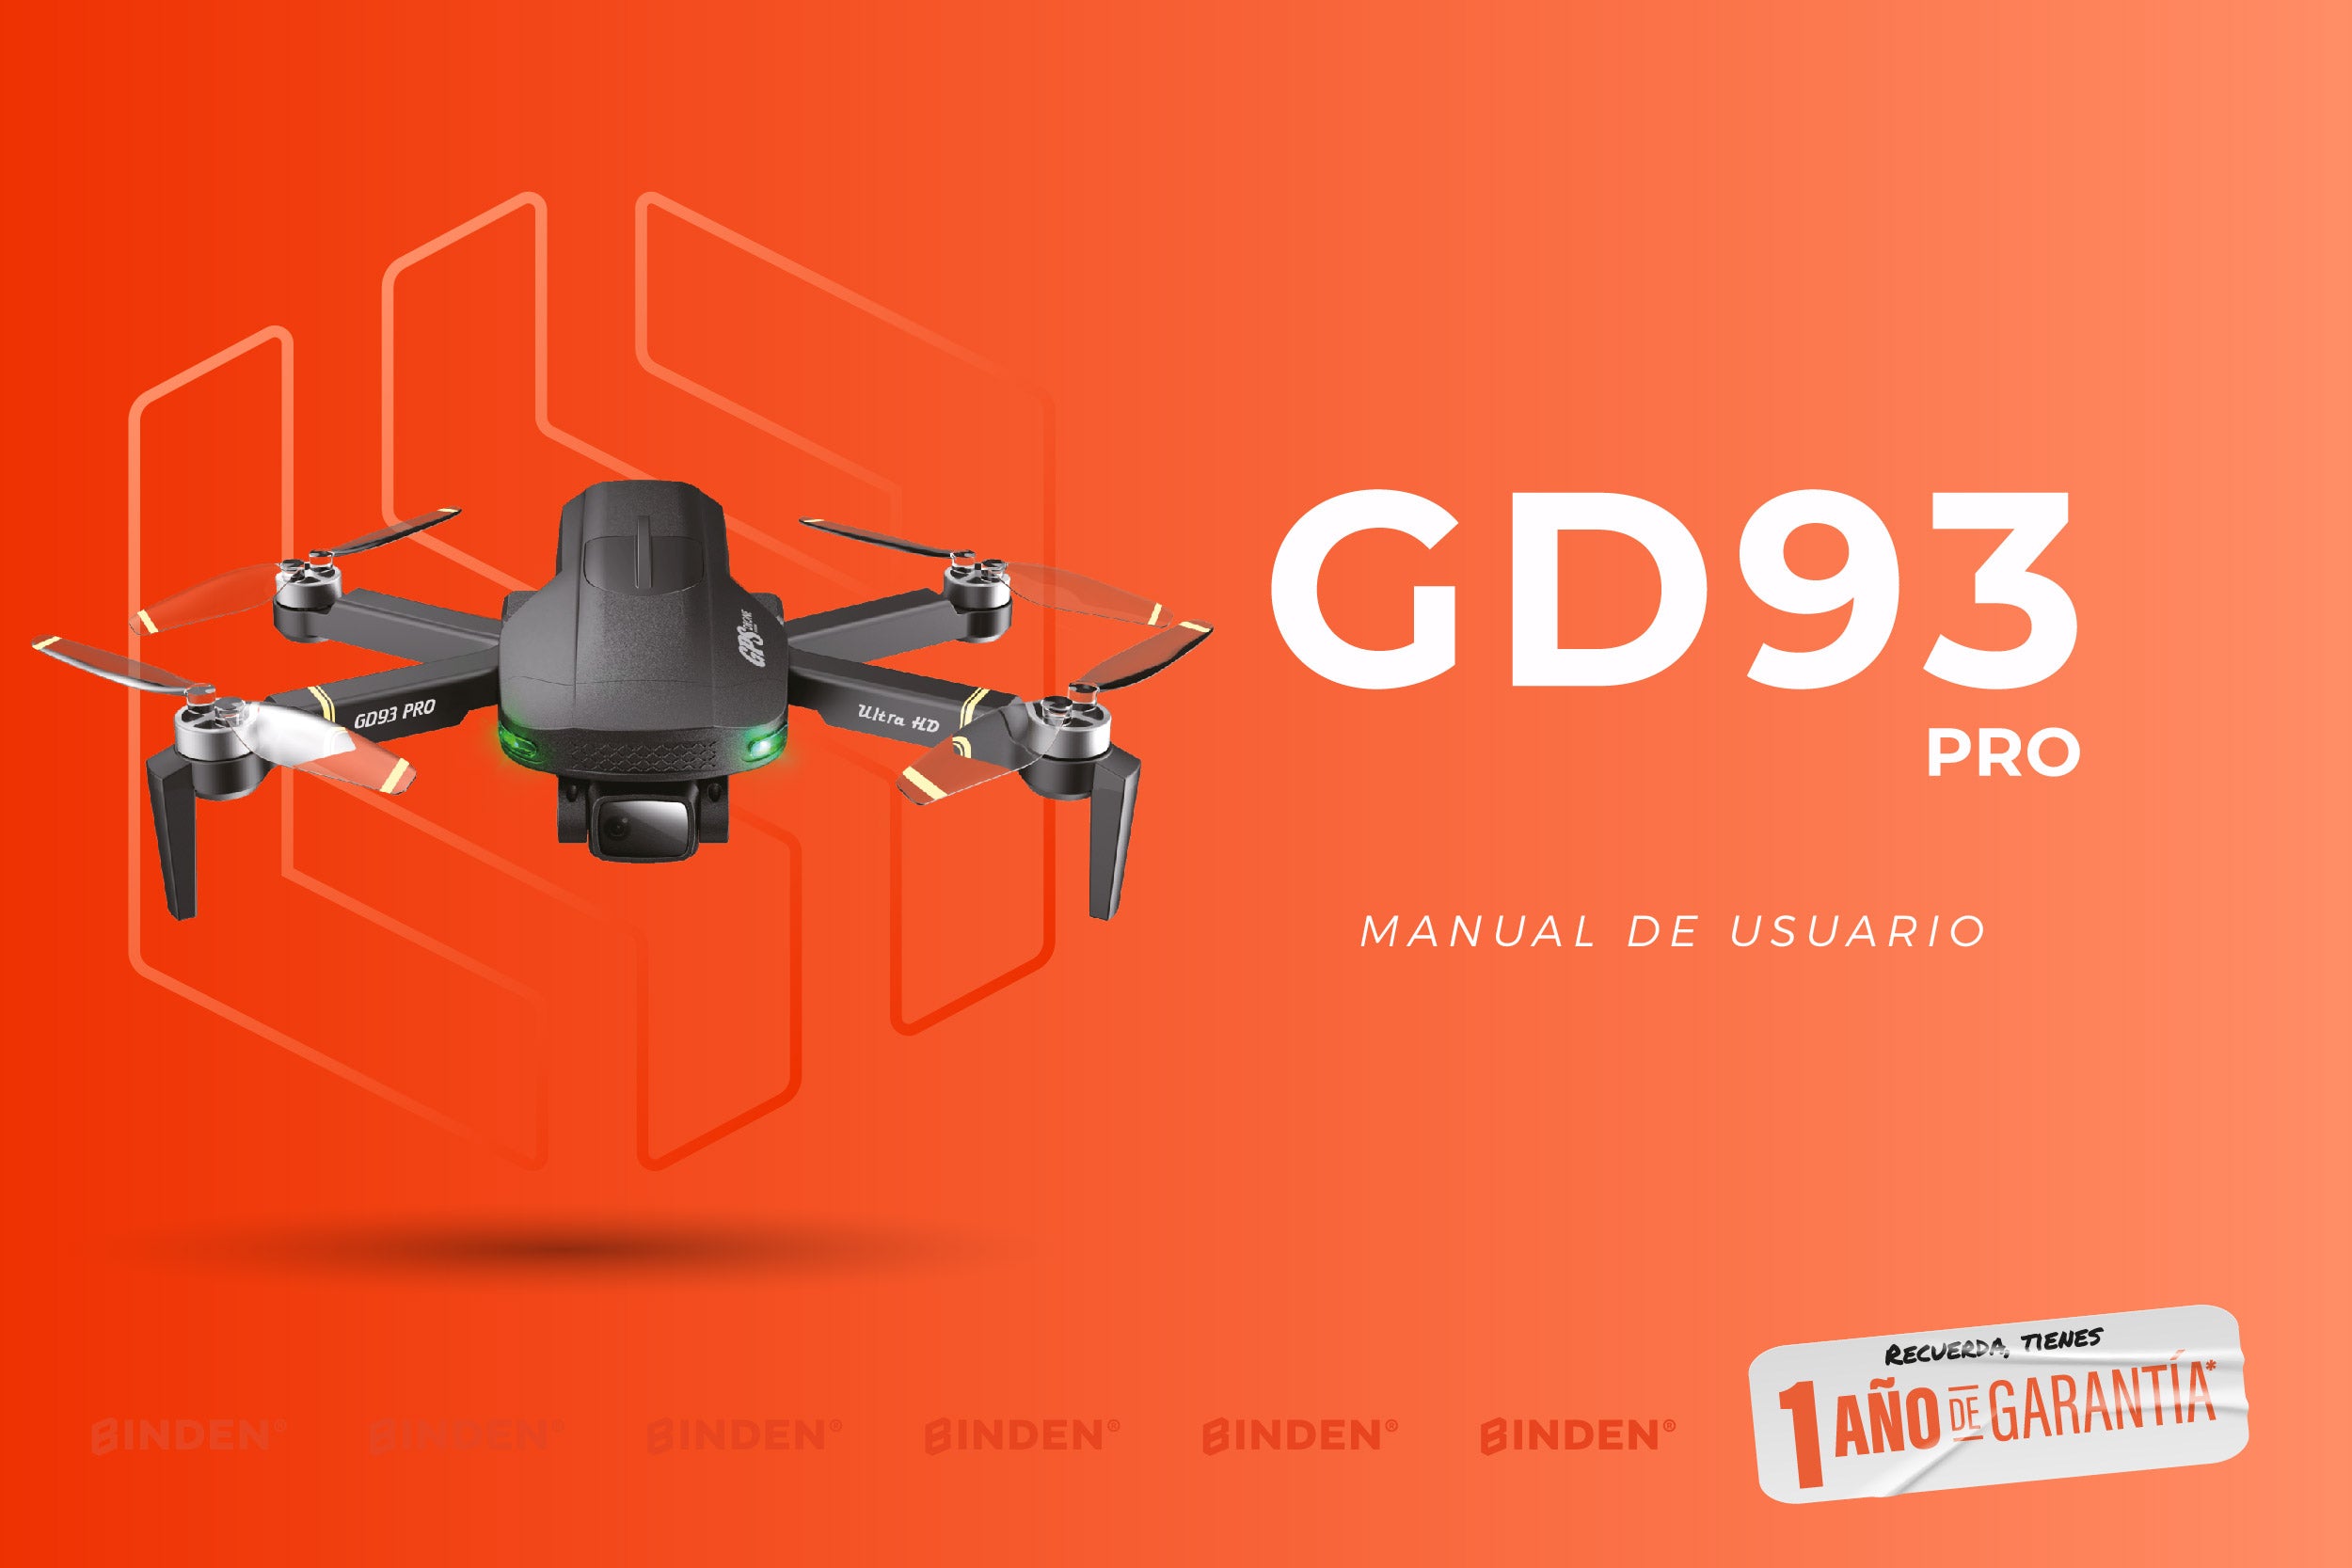 Manual de usuario: Drone GD93 pro